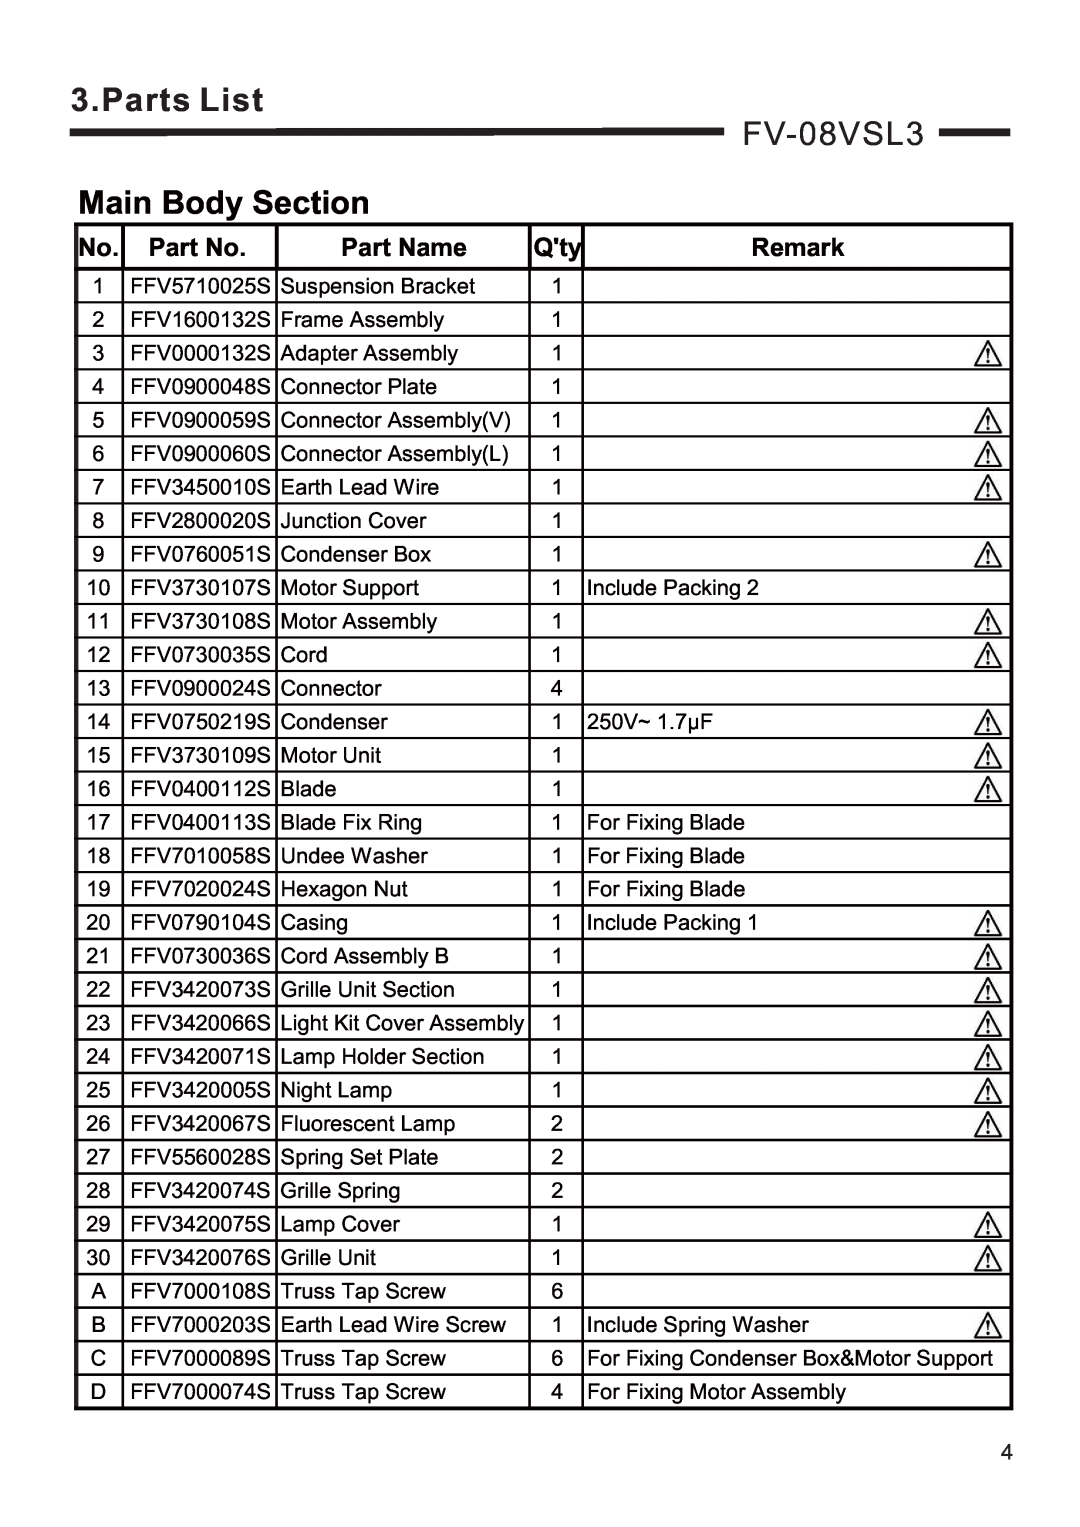 Panasonic FV-08VSL3, FV-10VSL3 service manual Parts List, Main Body Section, Part Name, Remark 